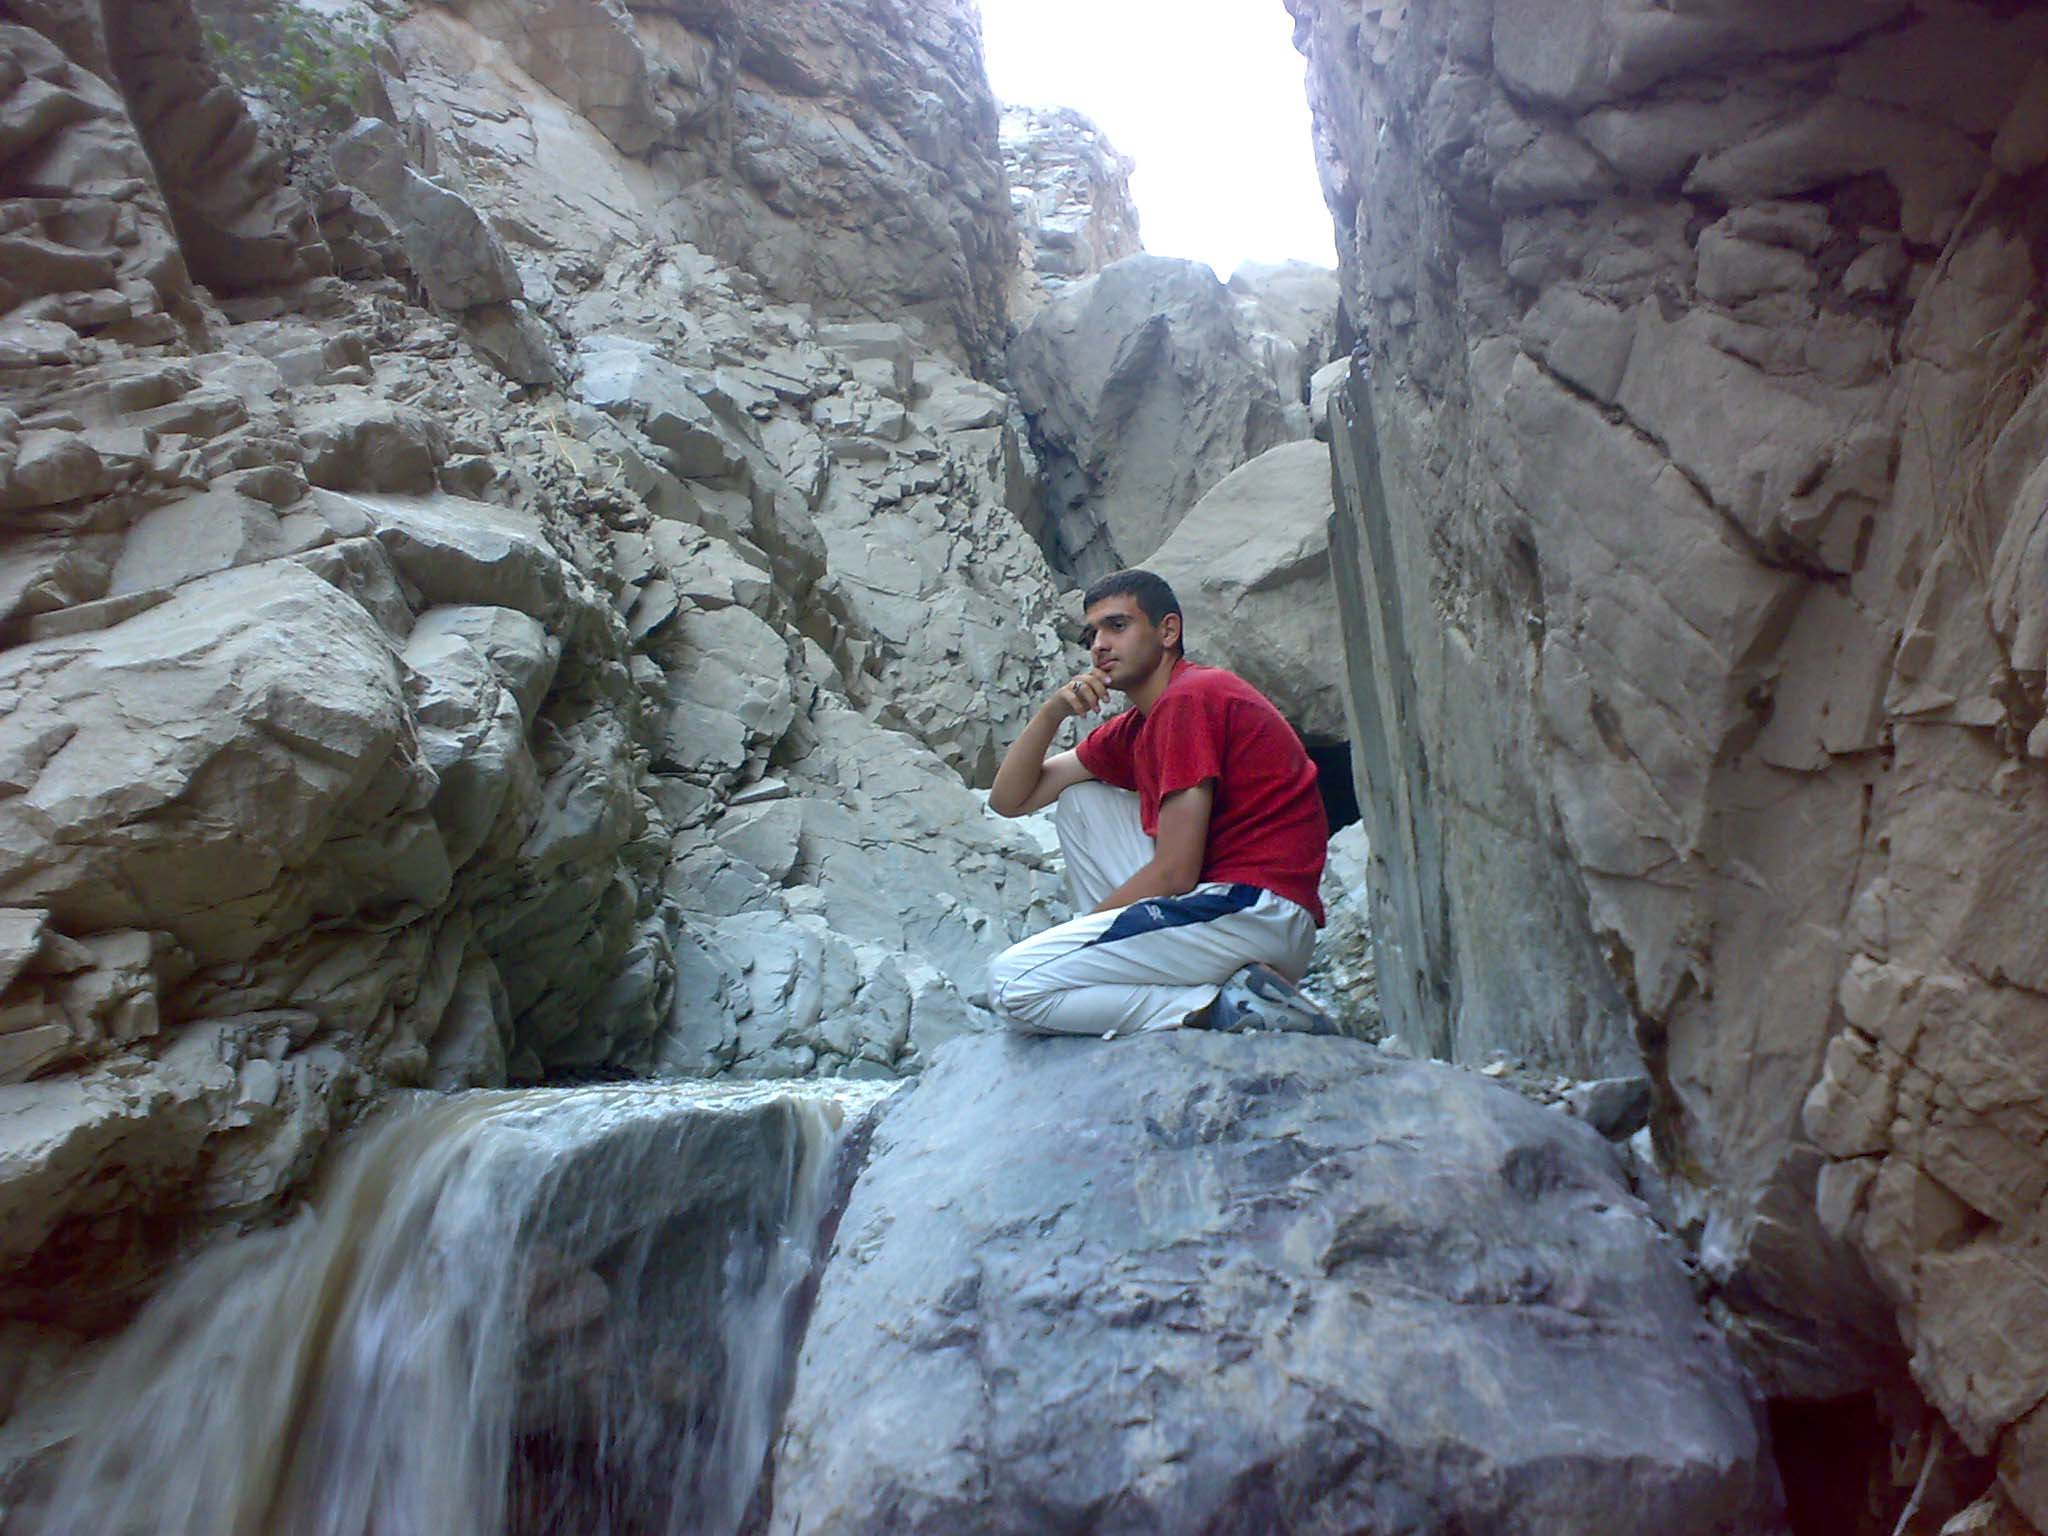 عکسی از شهید دولت آبادی در کوههای اطراف سبزوار(شملق)- شهدای ناجا